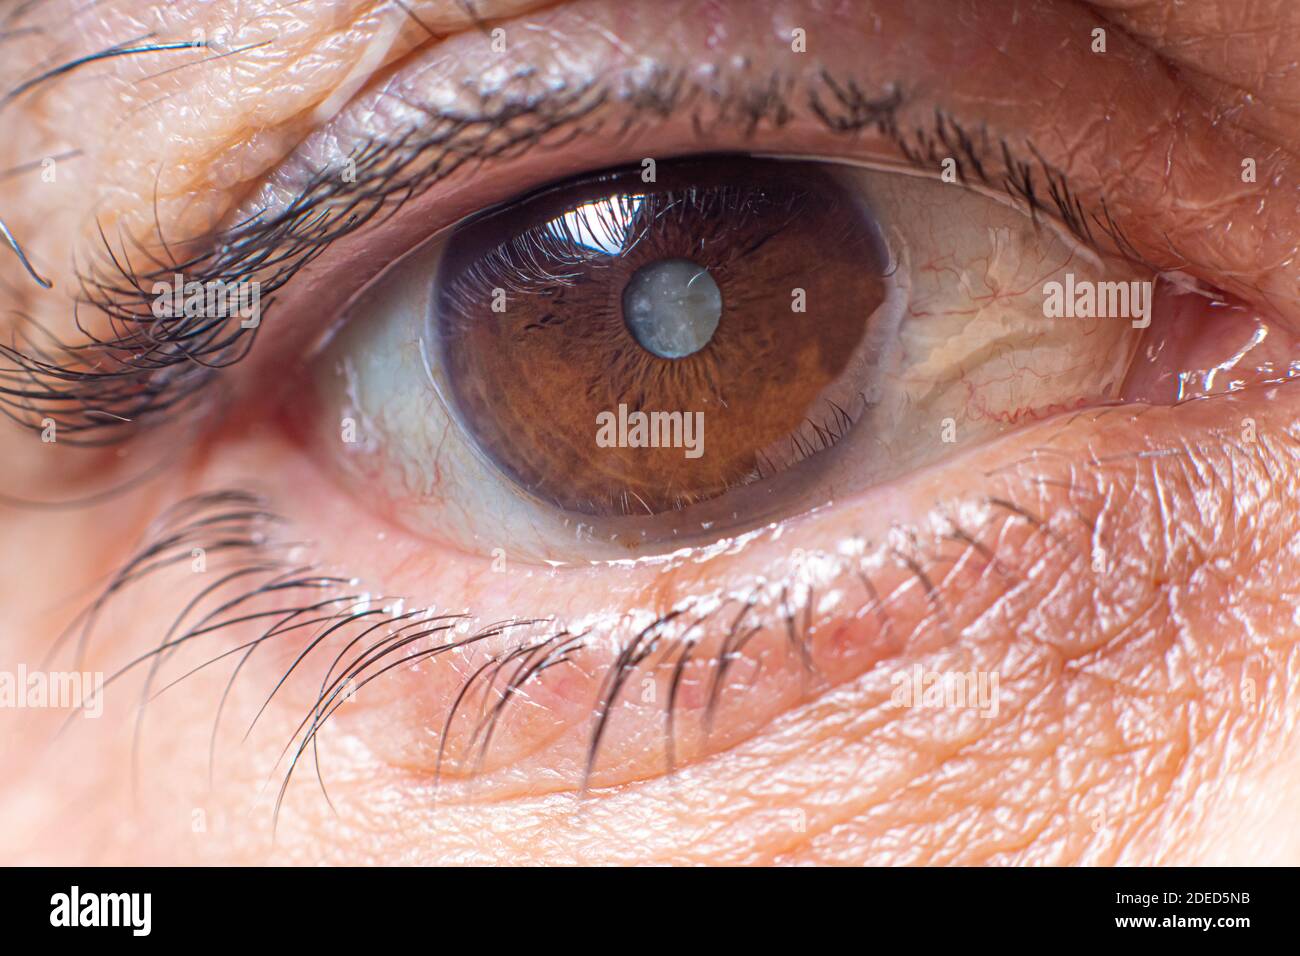 Makrofotos des menschlichen Auges - Katarakt Trübung der Linse, Verschlechterung des Sehvermögens. Kataraktbehandlung, Chirurgie und Augenheilkunde Stockfoto